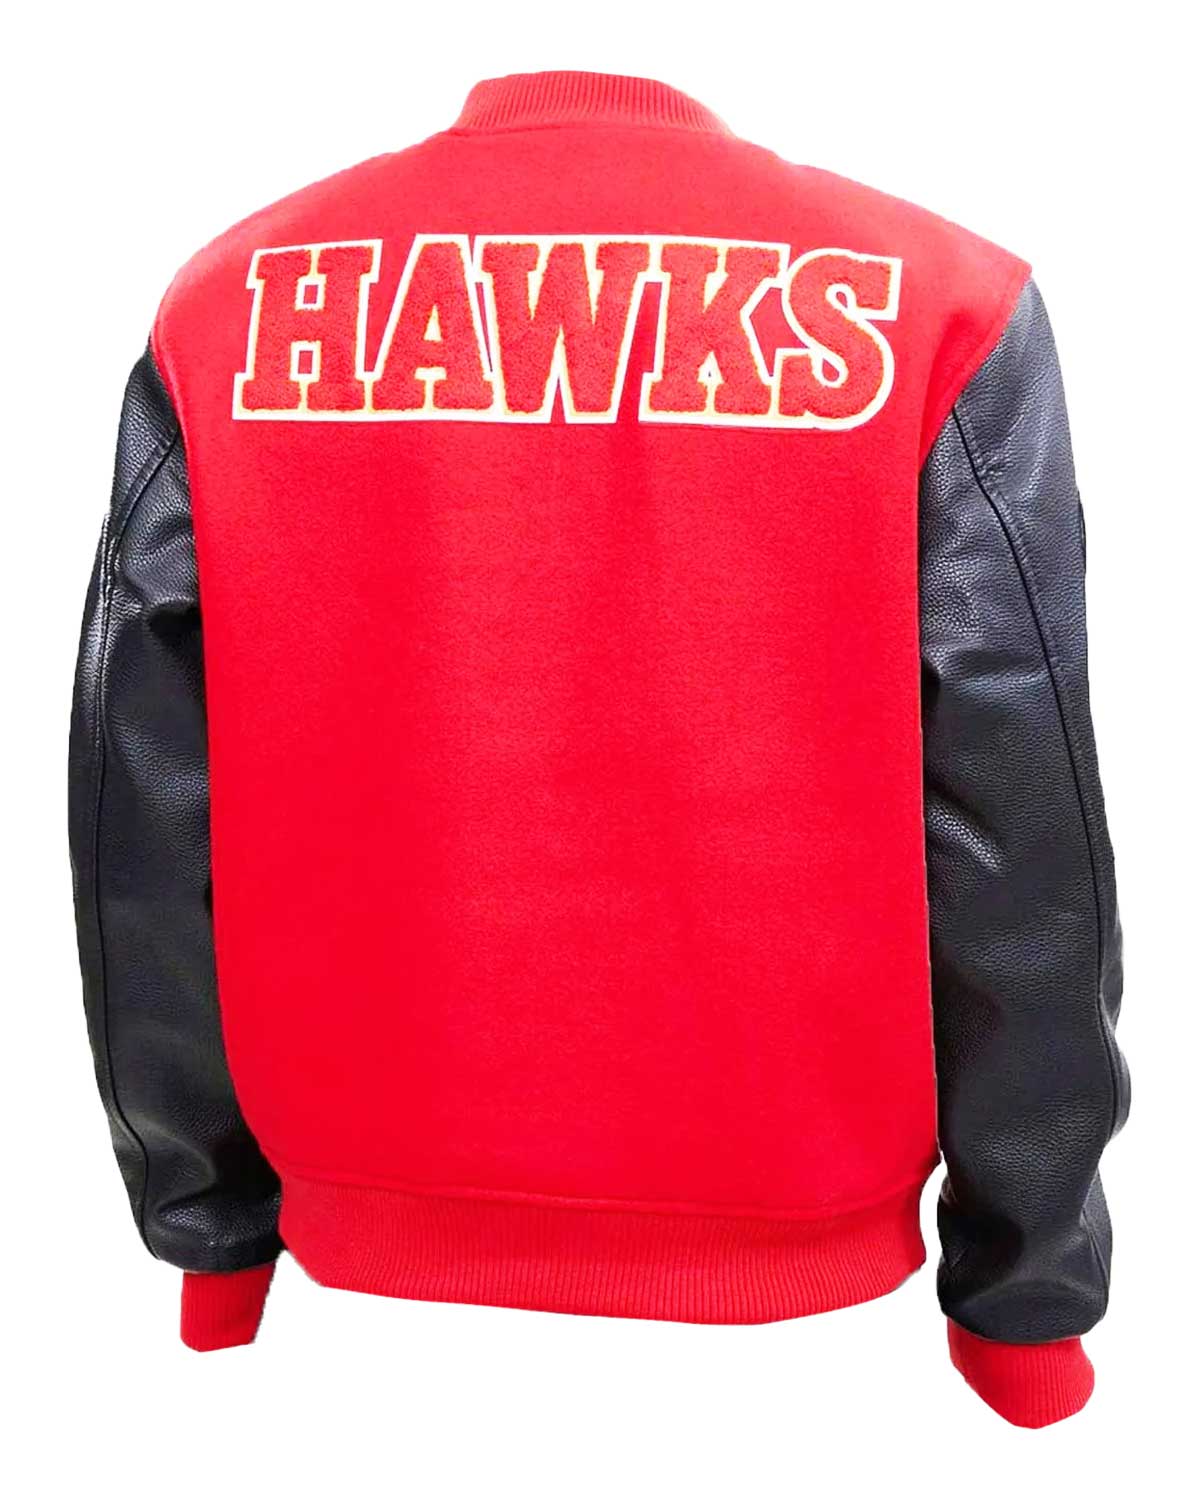 Atlanta Hawks Letterman Red And Black Jacket | Elite Jacket